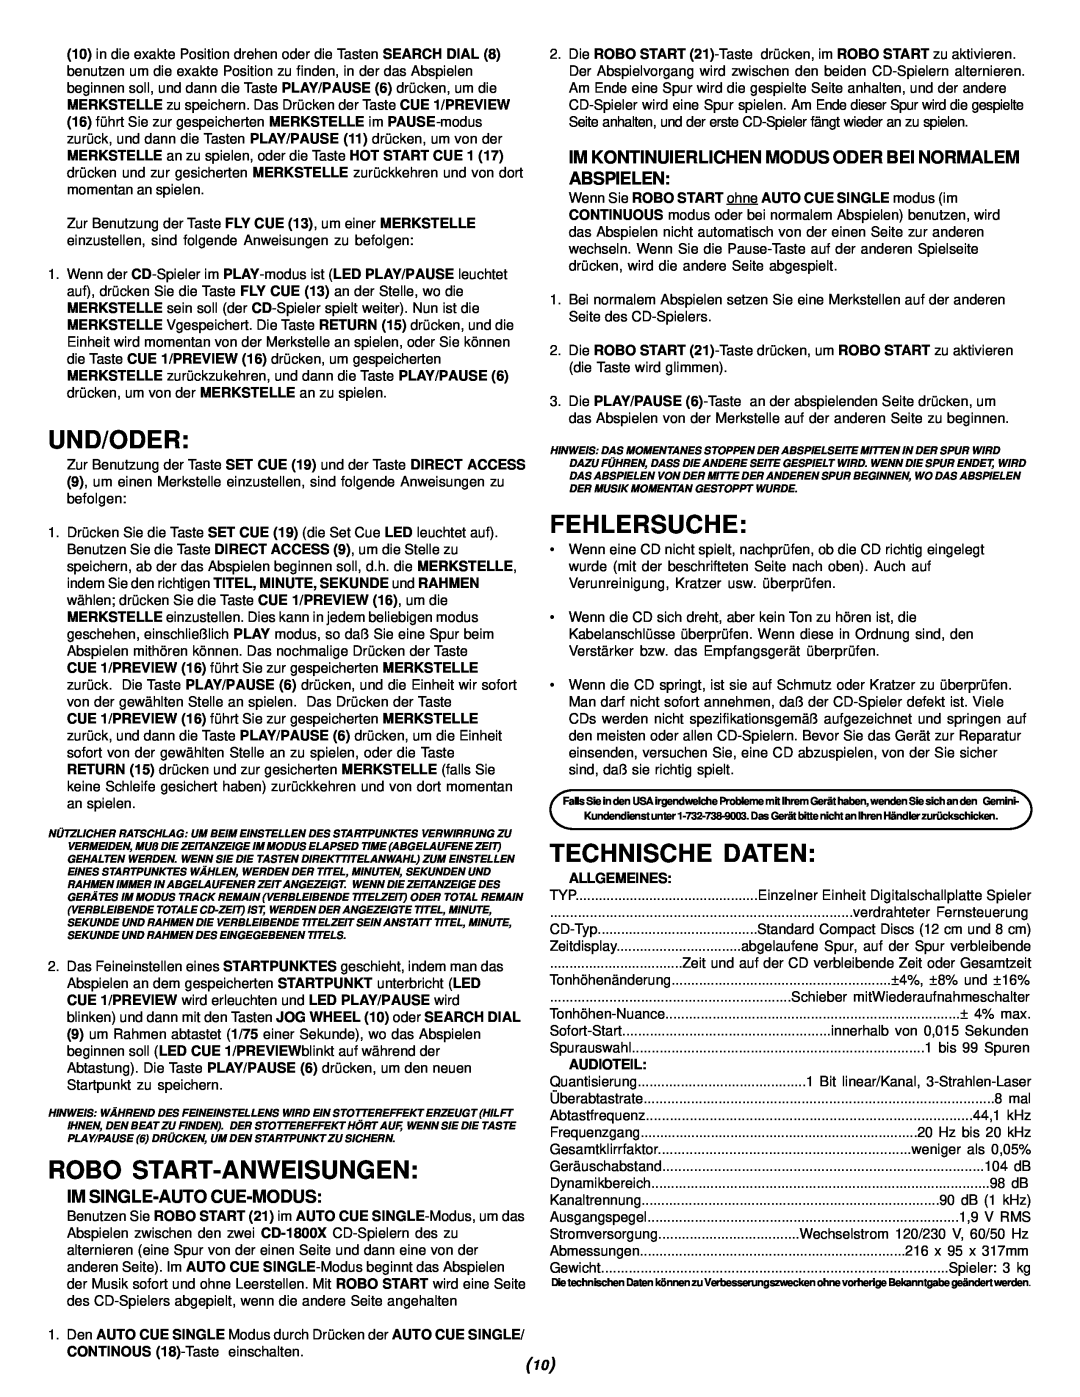 Gemini CD-1800X Und/Oder, Robo Start-Anweisungen, Fehlersuche, Technische Daten, Im Single-Auto Cue-Modus, Allgemeines 